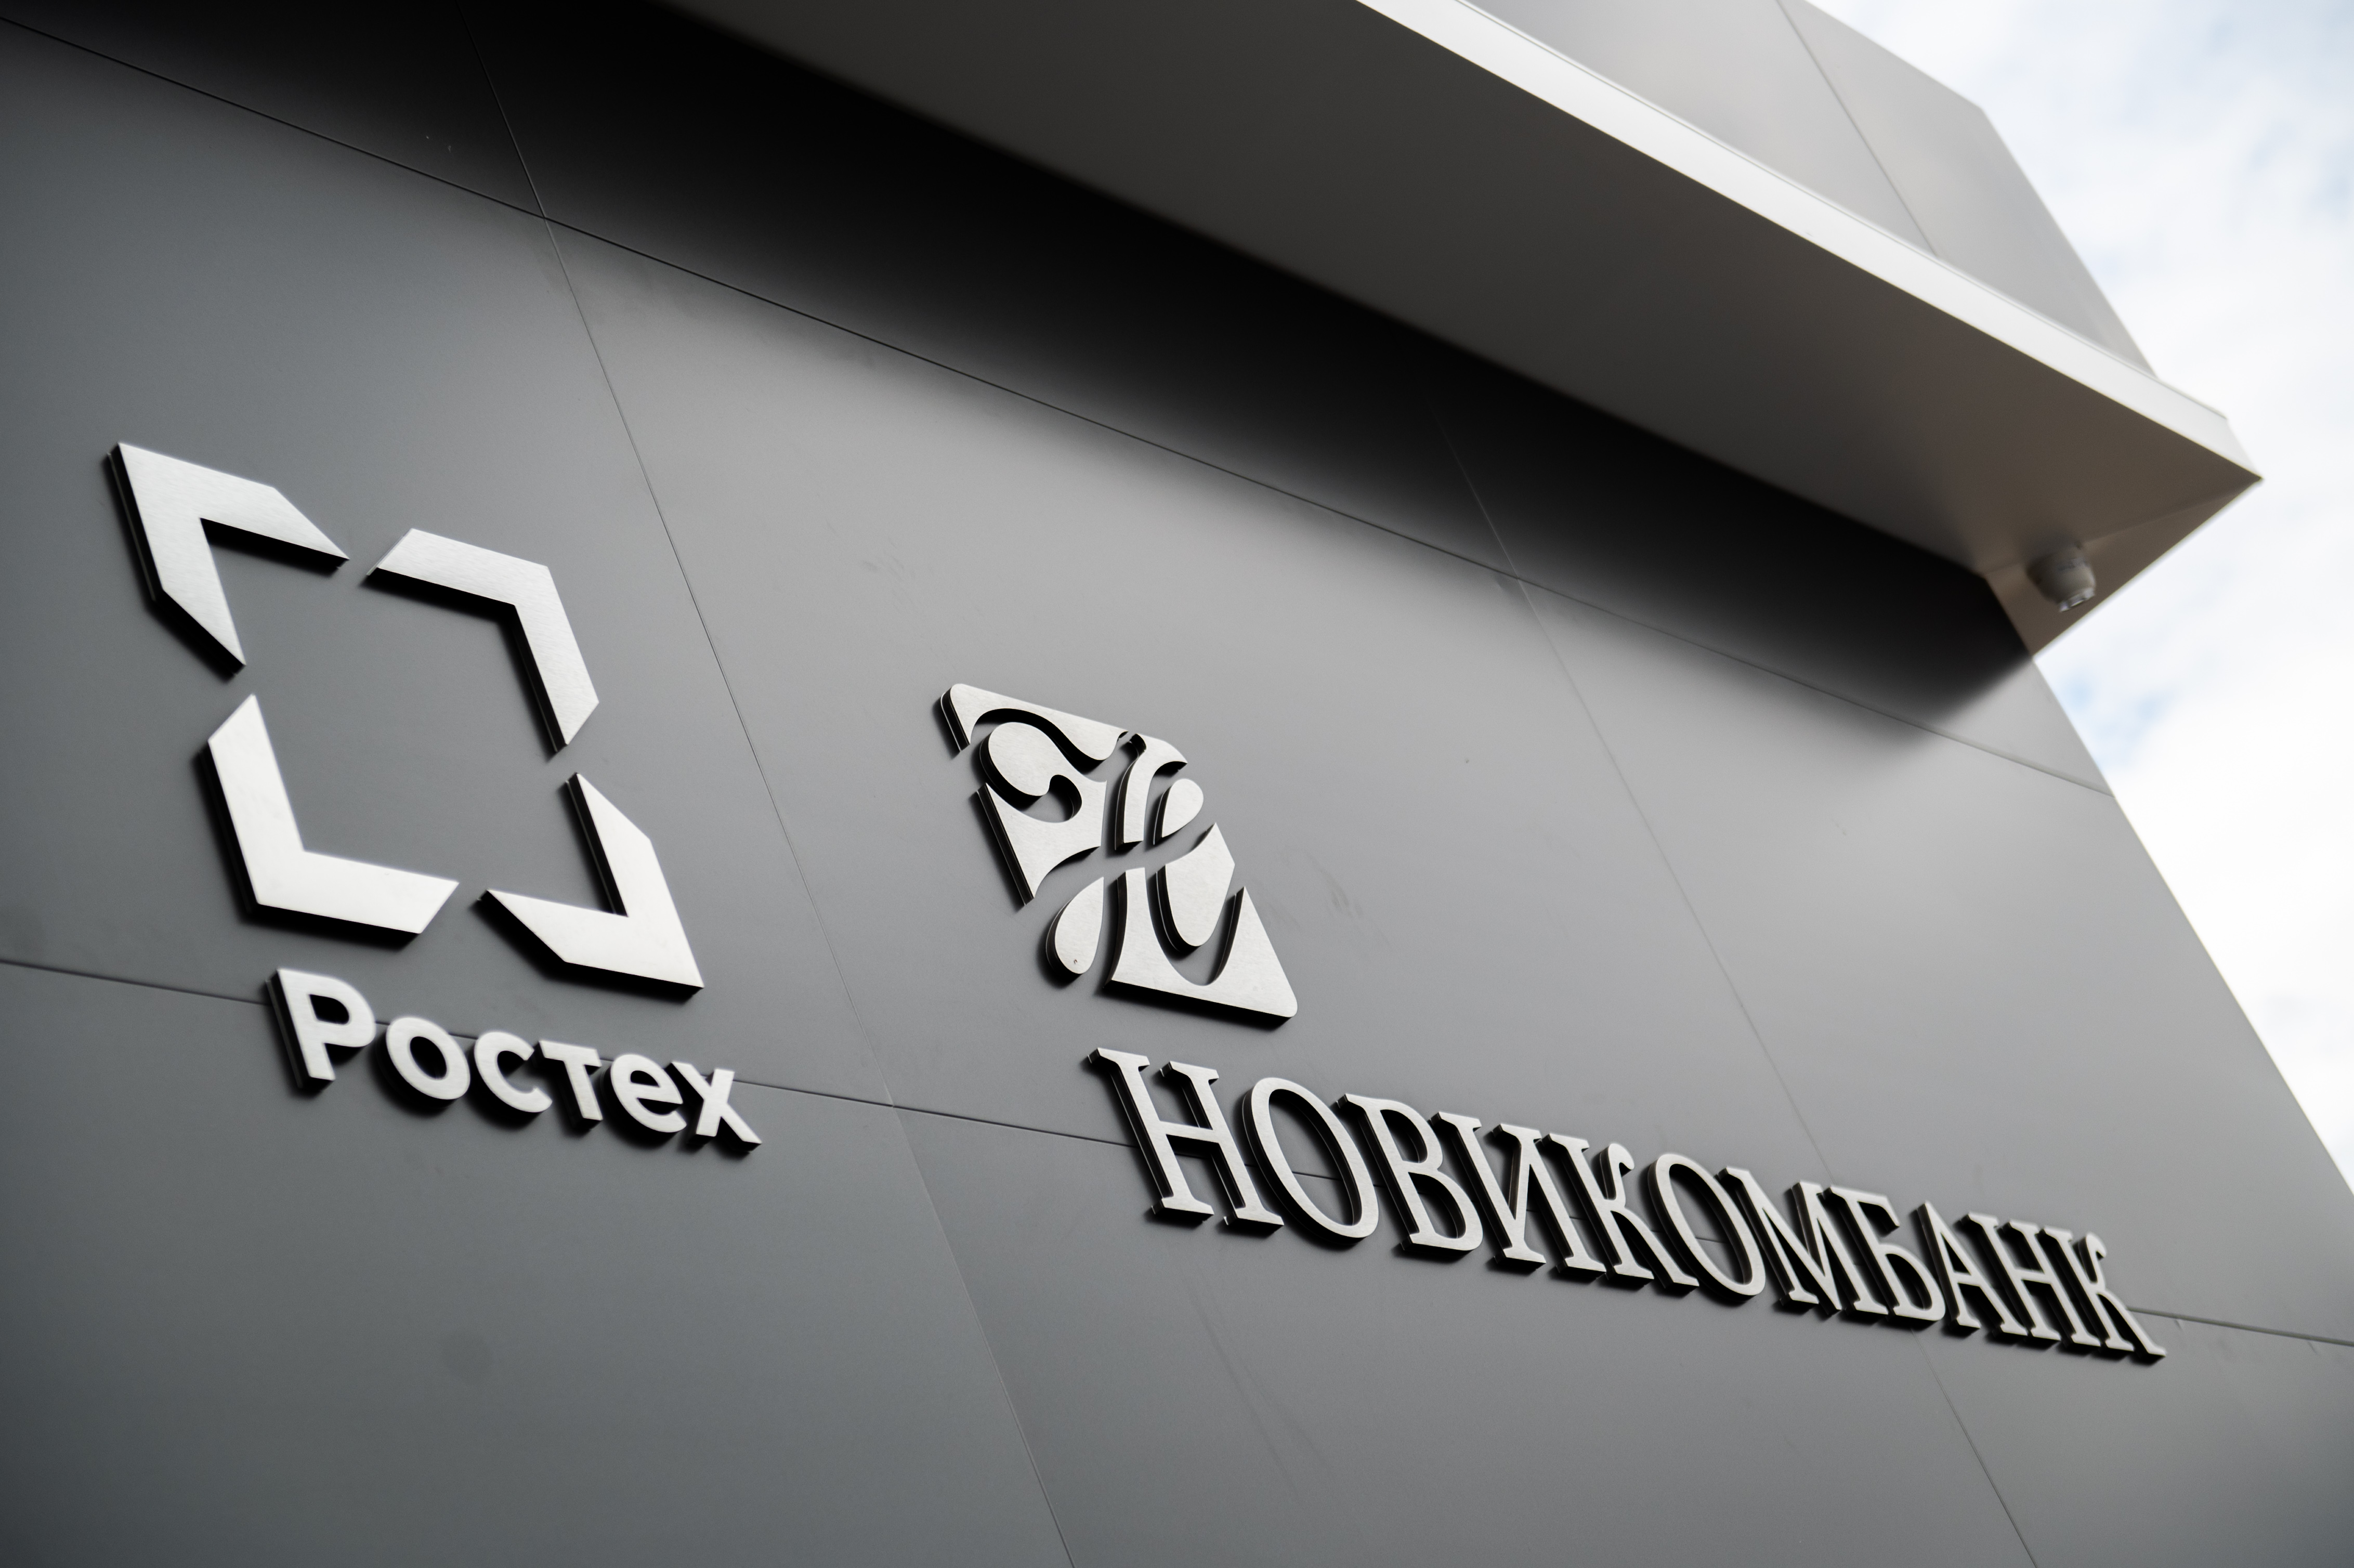 Новикомбанк запустил выгодные акции для клиентов к юбилею Ростеха